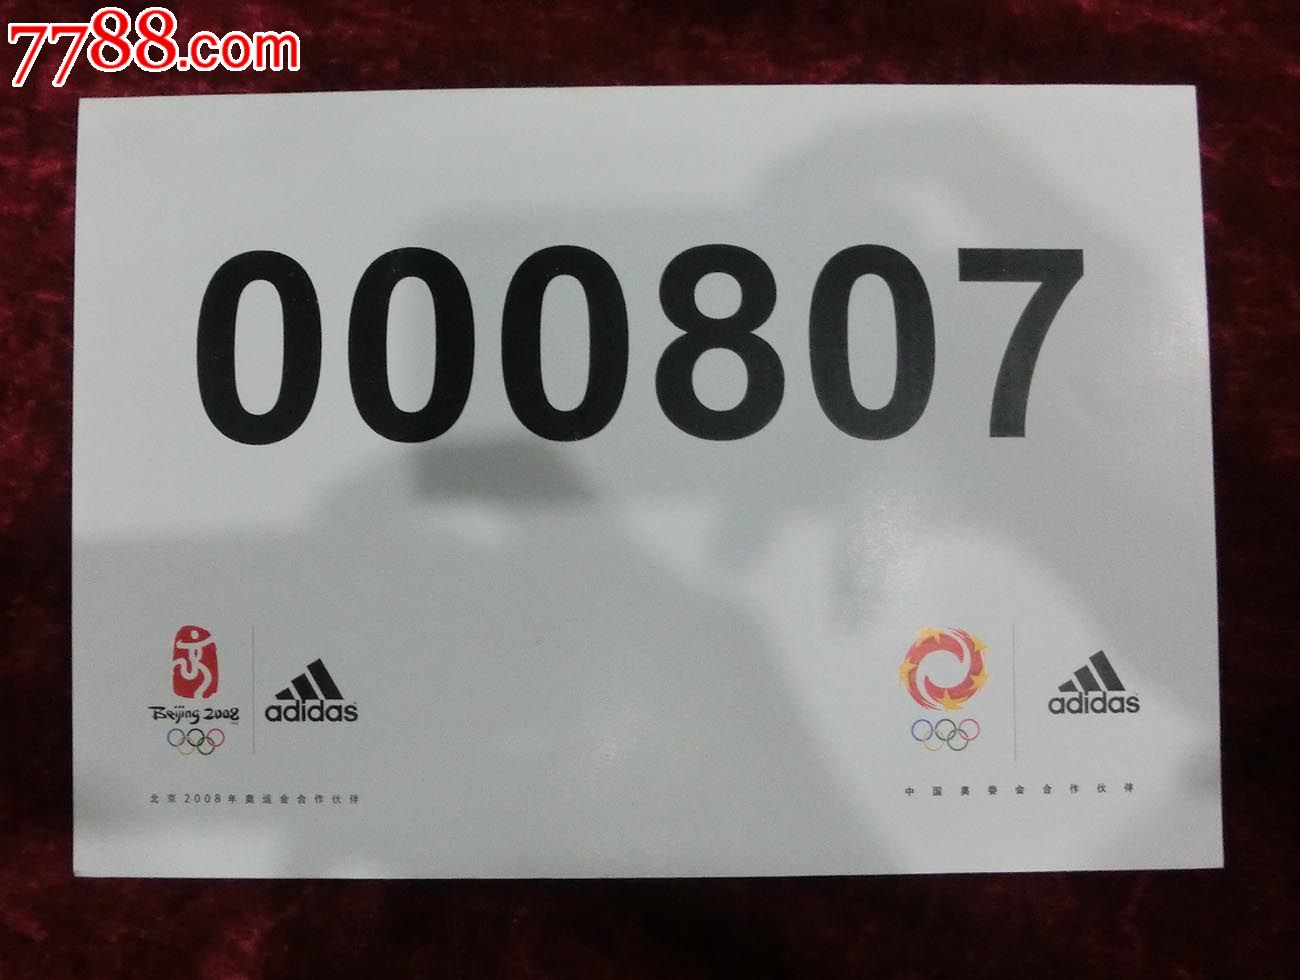 北京2008年奥运会号码牌000807